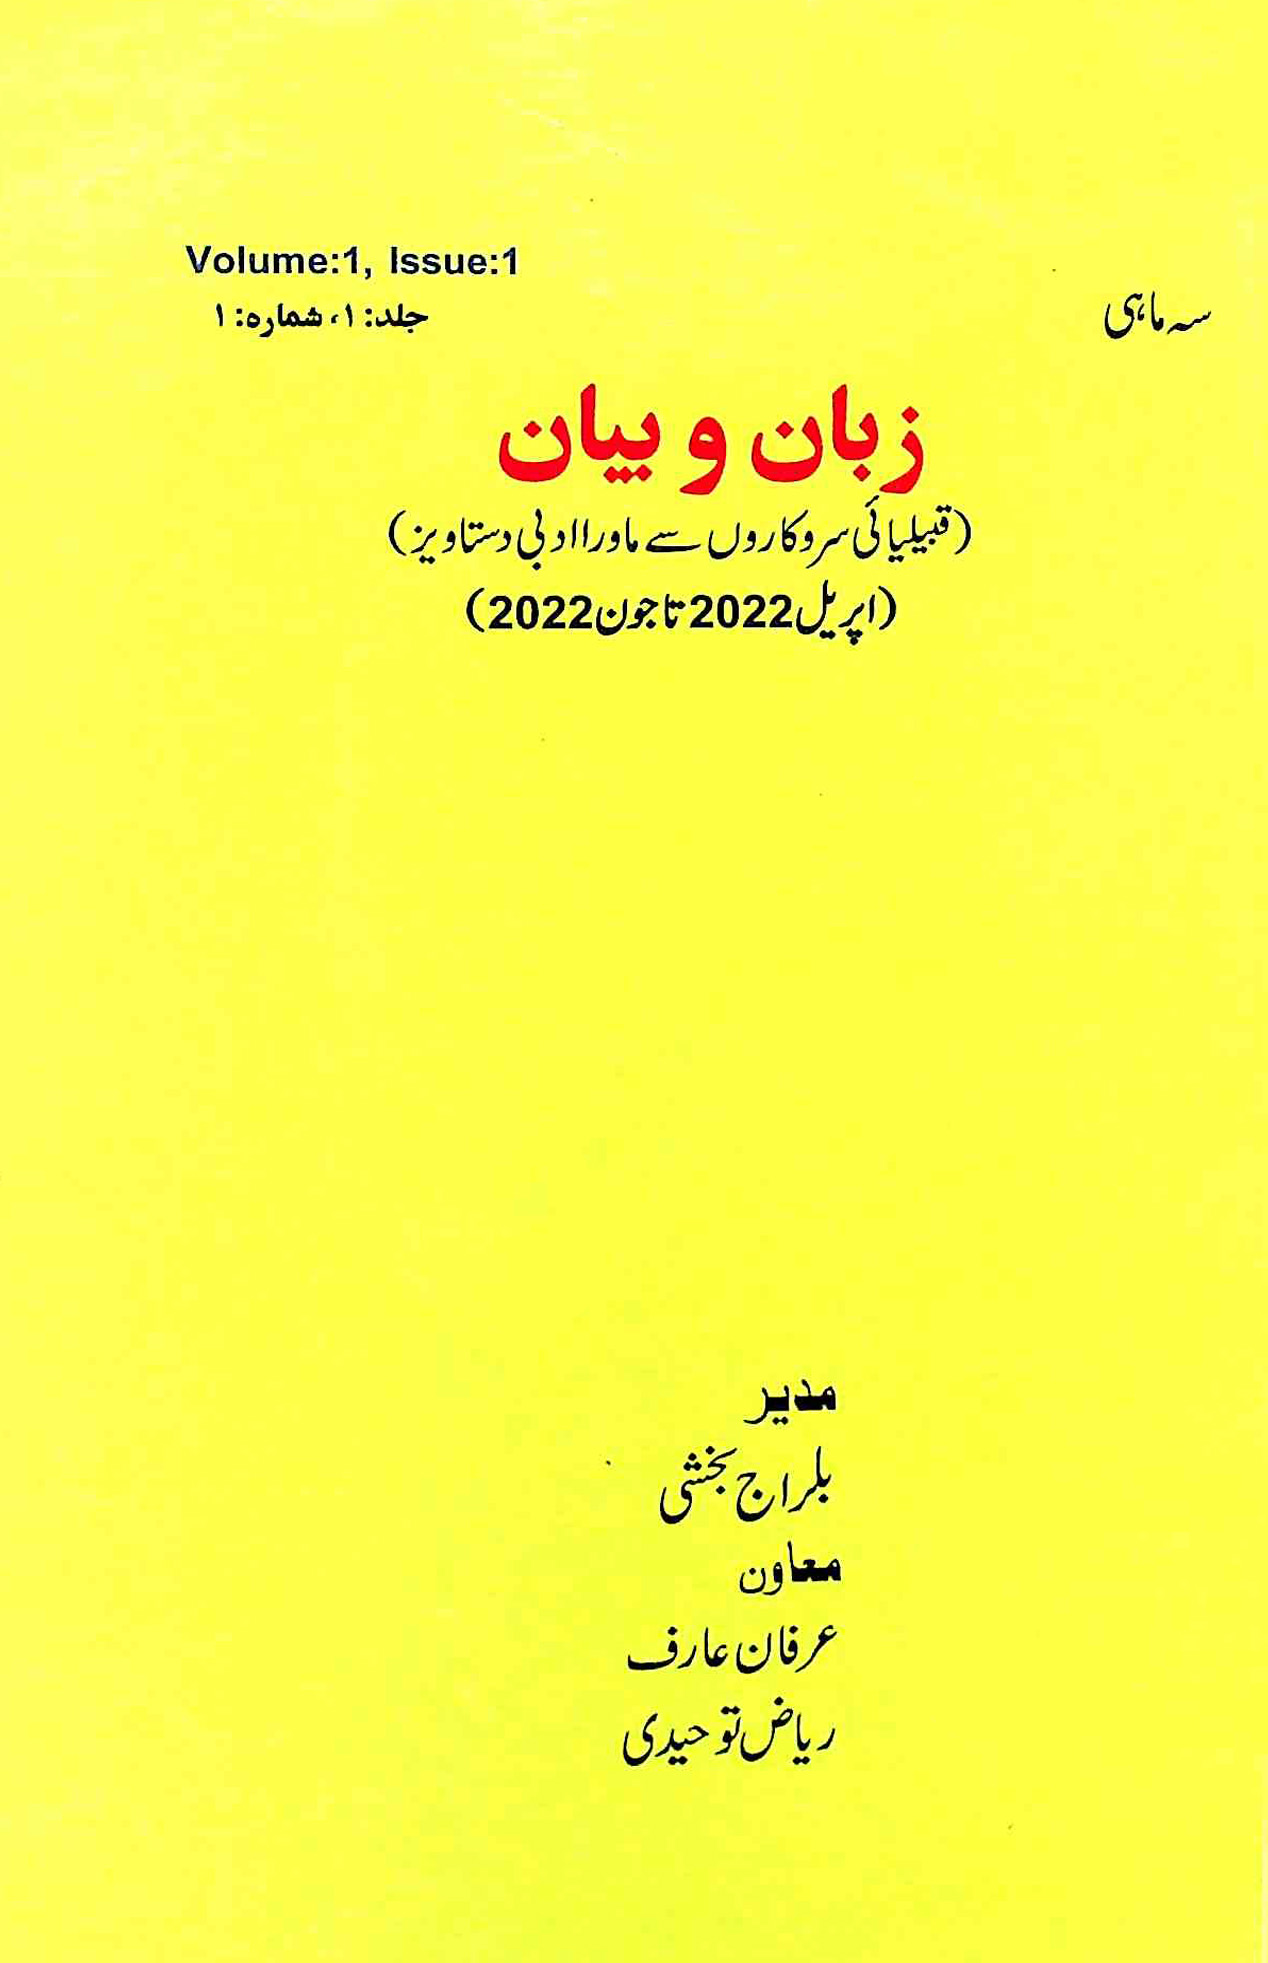 Zaban-o-Bayan- Magazine by Balraj Bakshi 